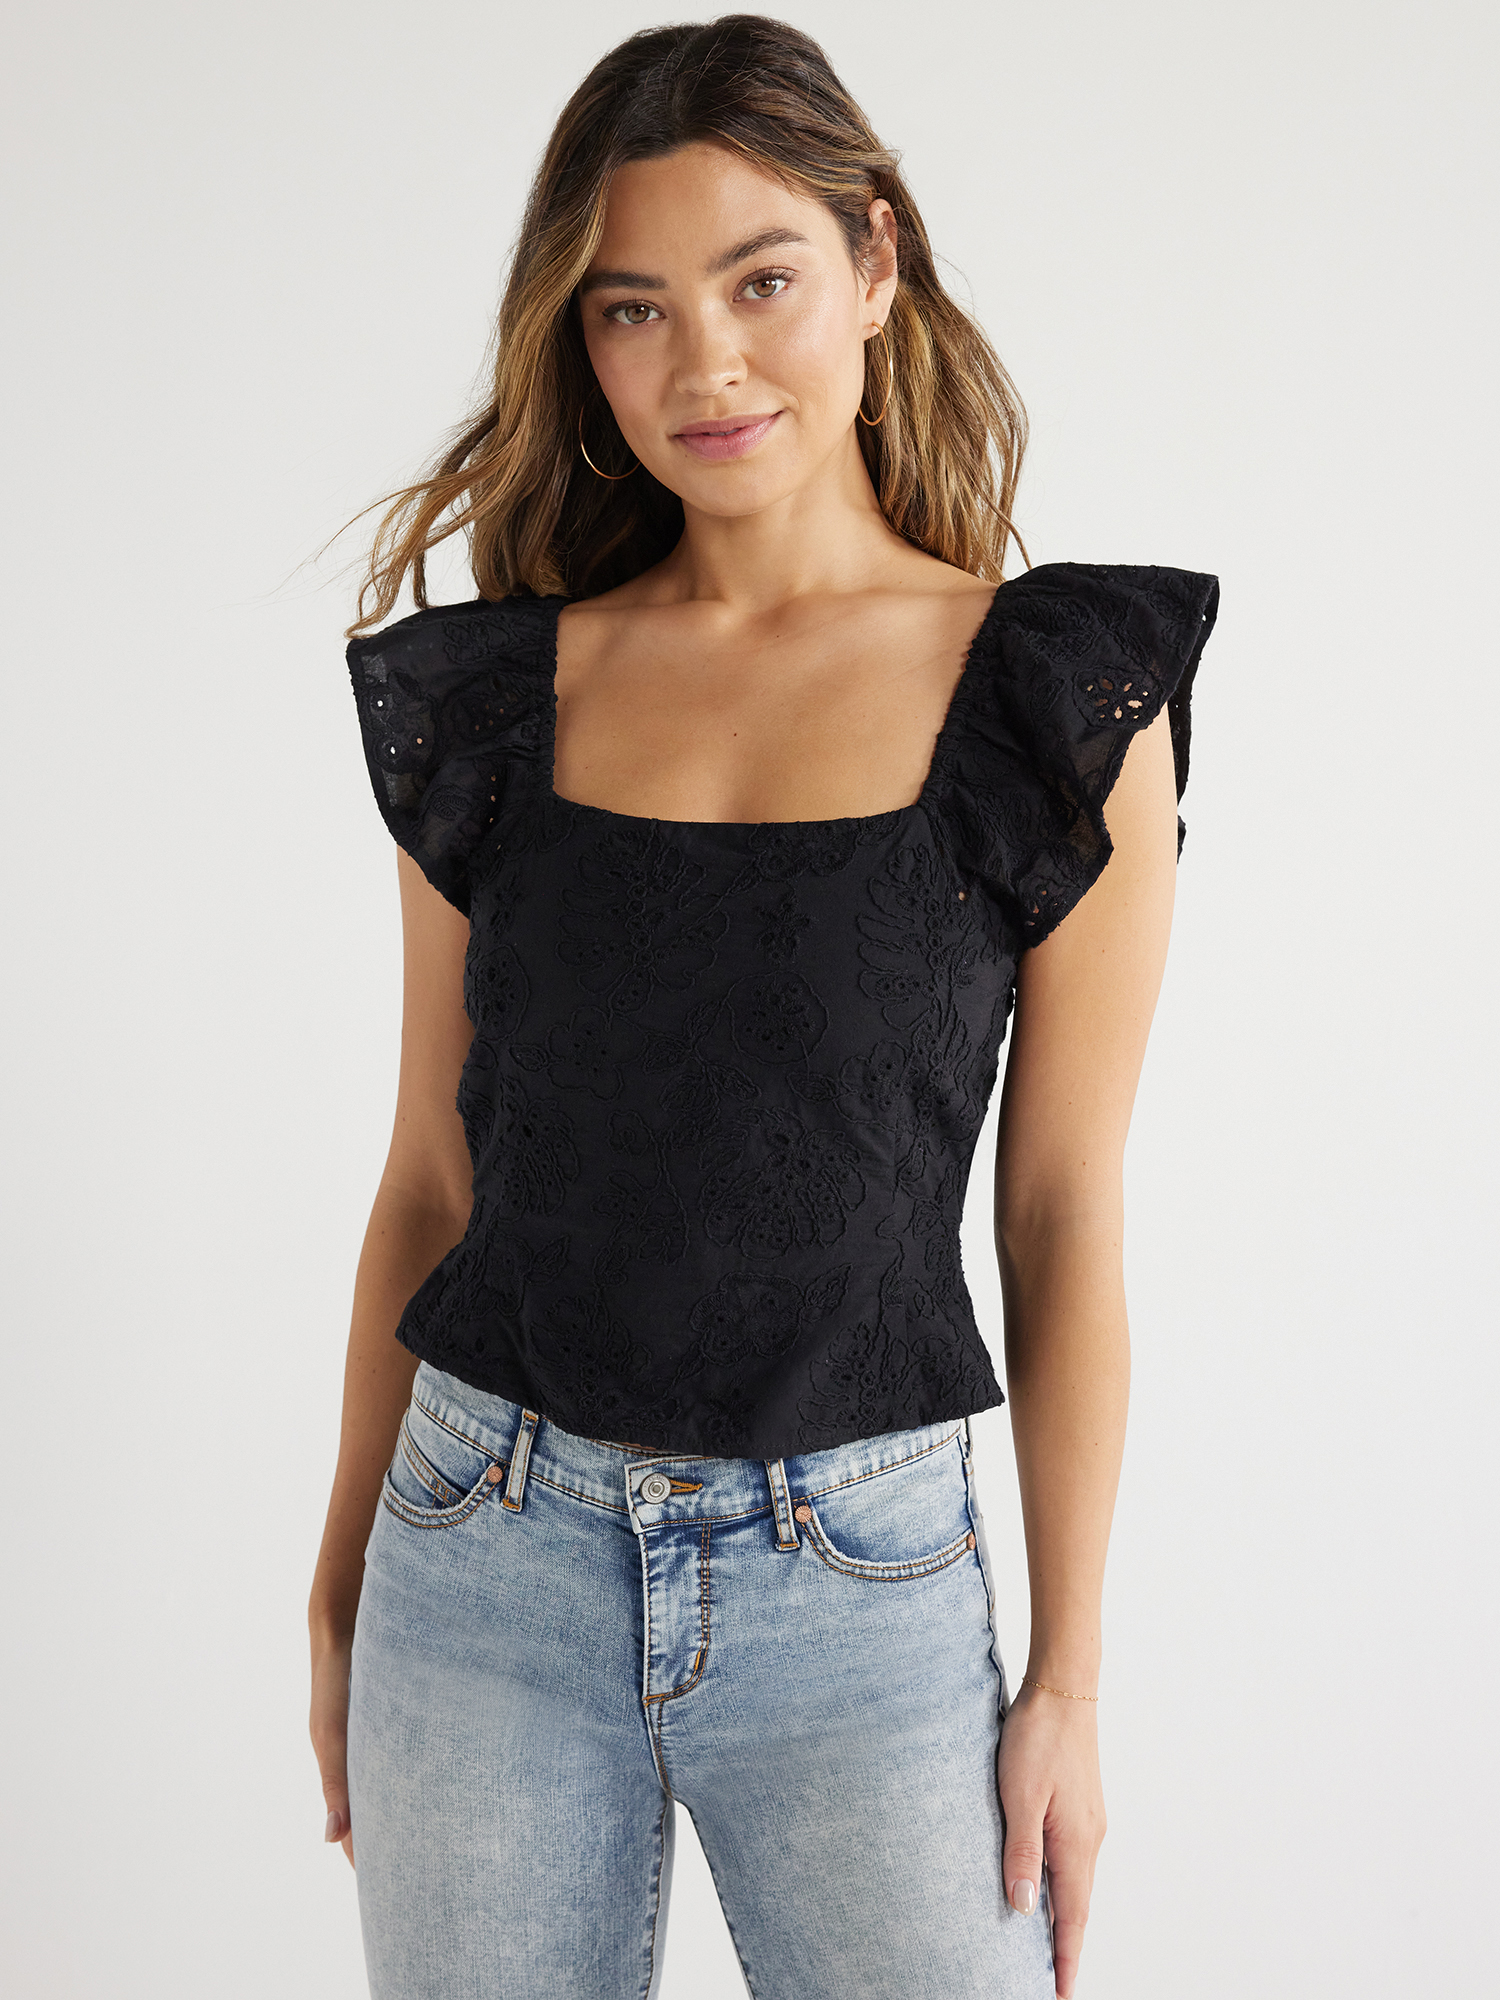 Sofia Jeans Women's Ruffle Sleeve Top, Sizes XS-XXXL - Walmart.com